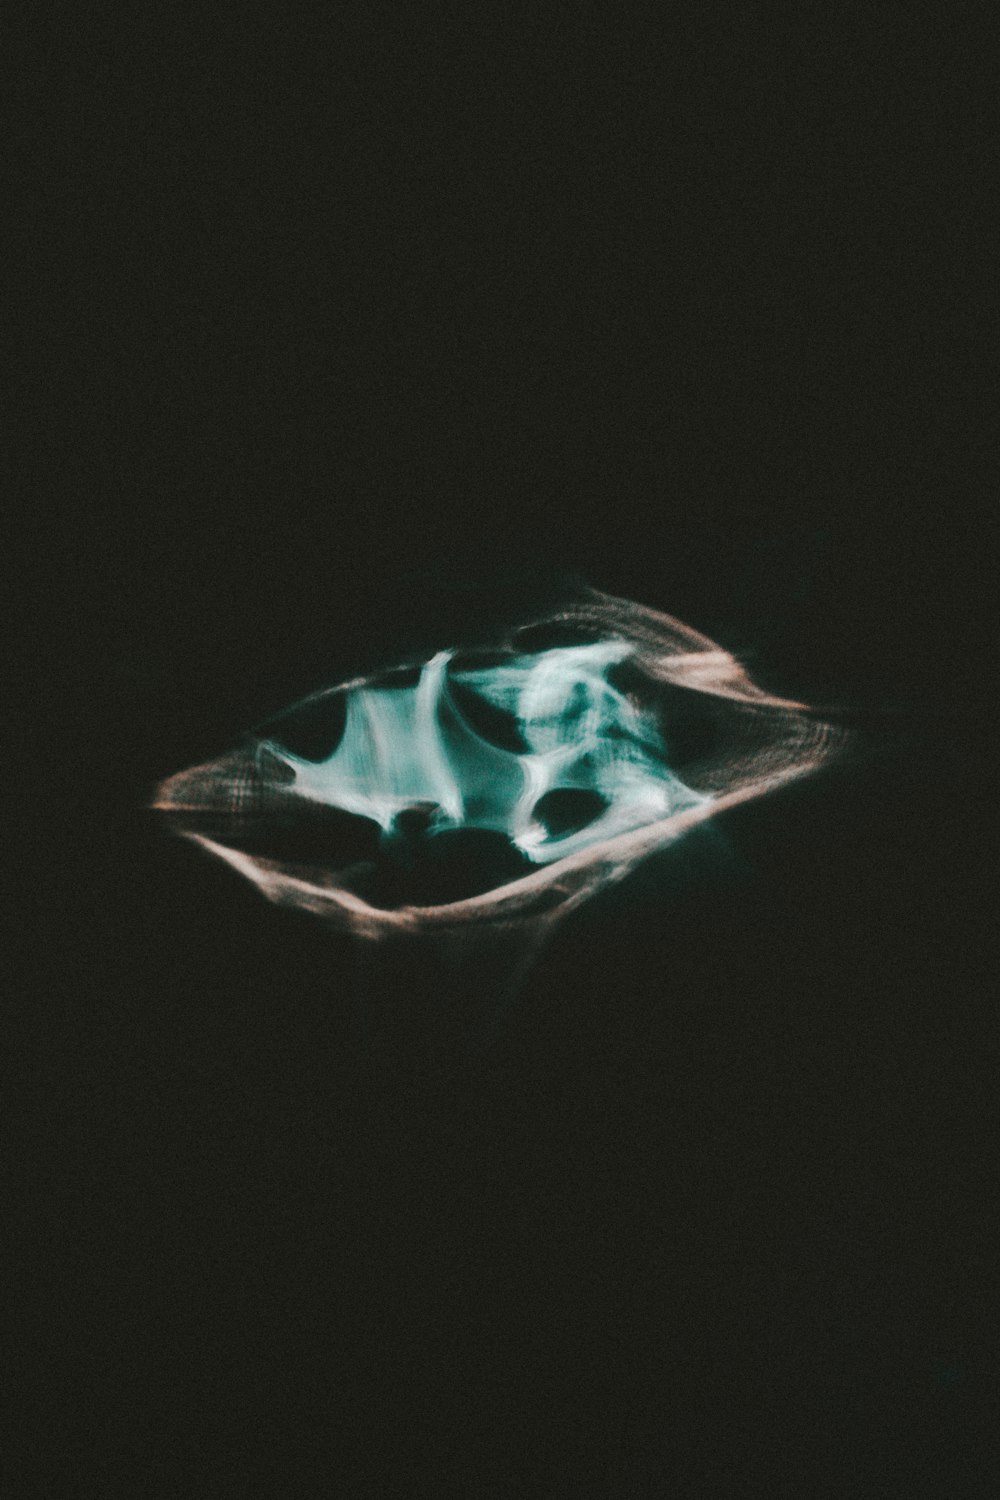 Un'immagine sfocata di una foglia nel buio